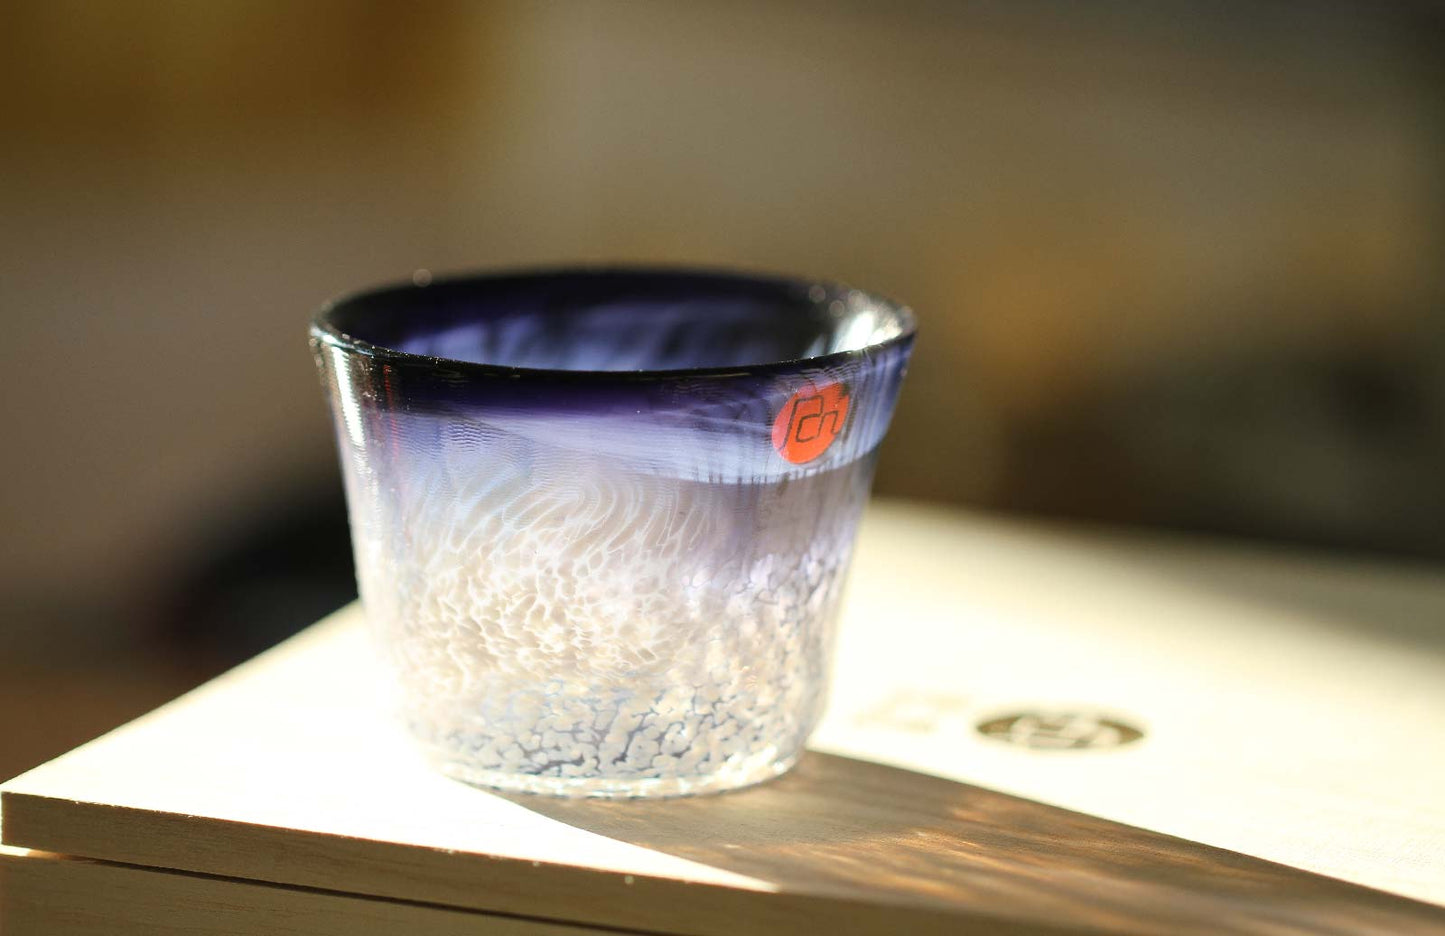 Tsugaru Vidro Fish of AOMORI Sake Glass Set